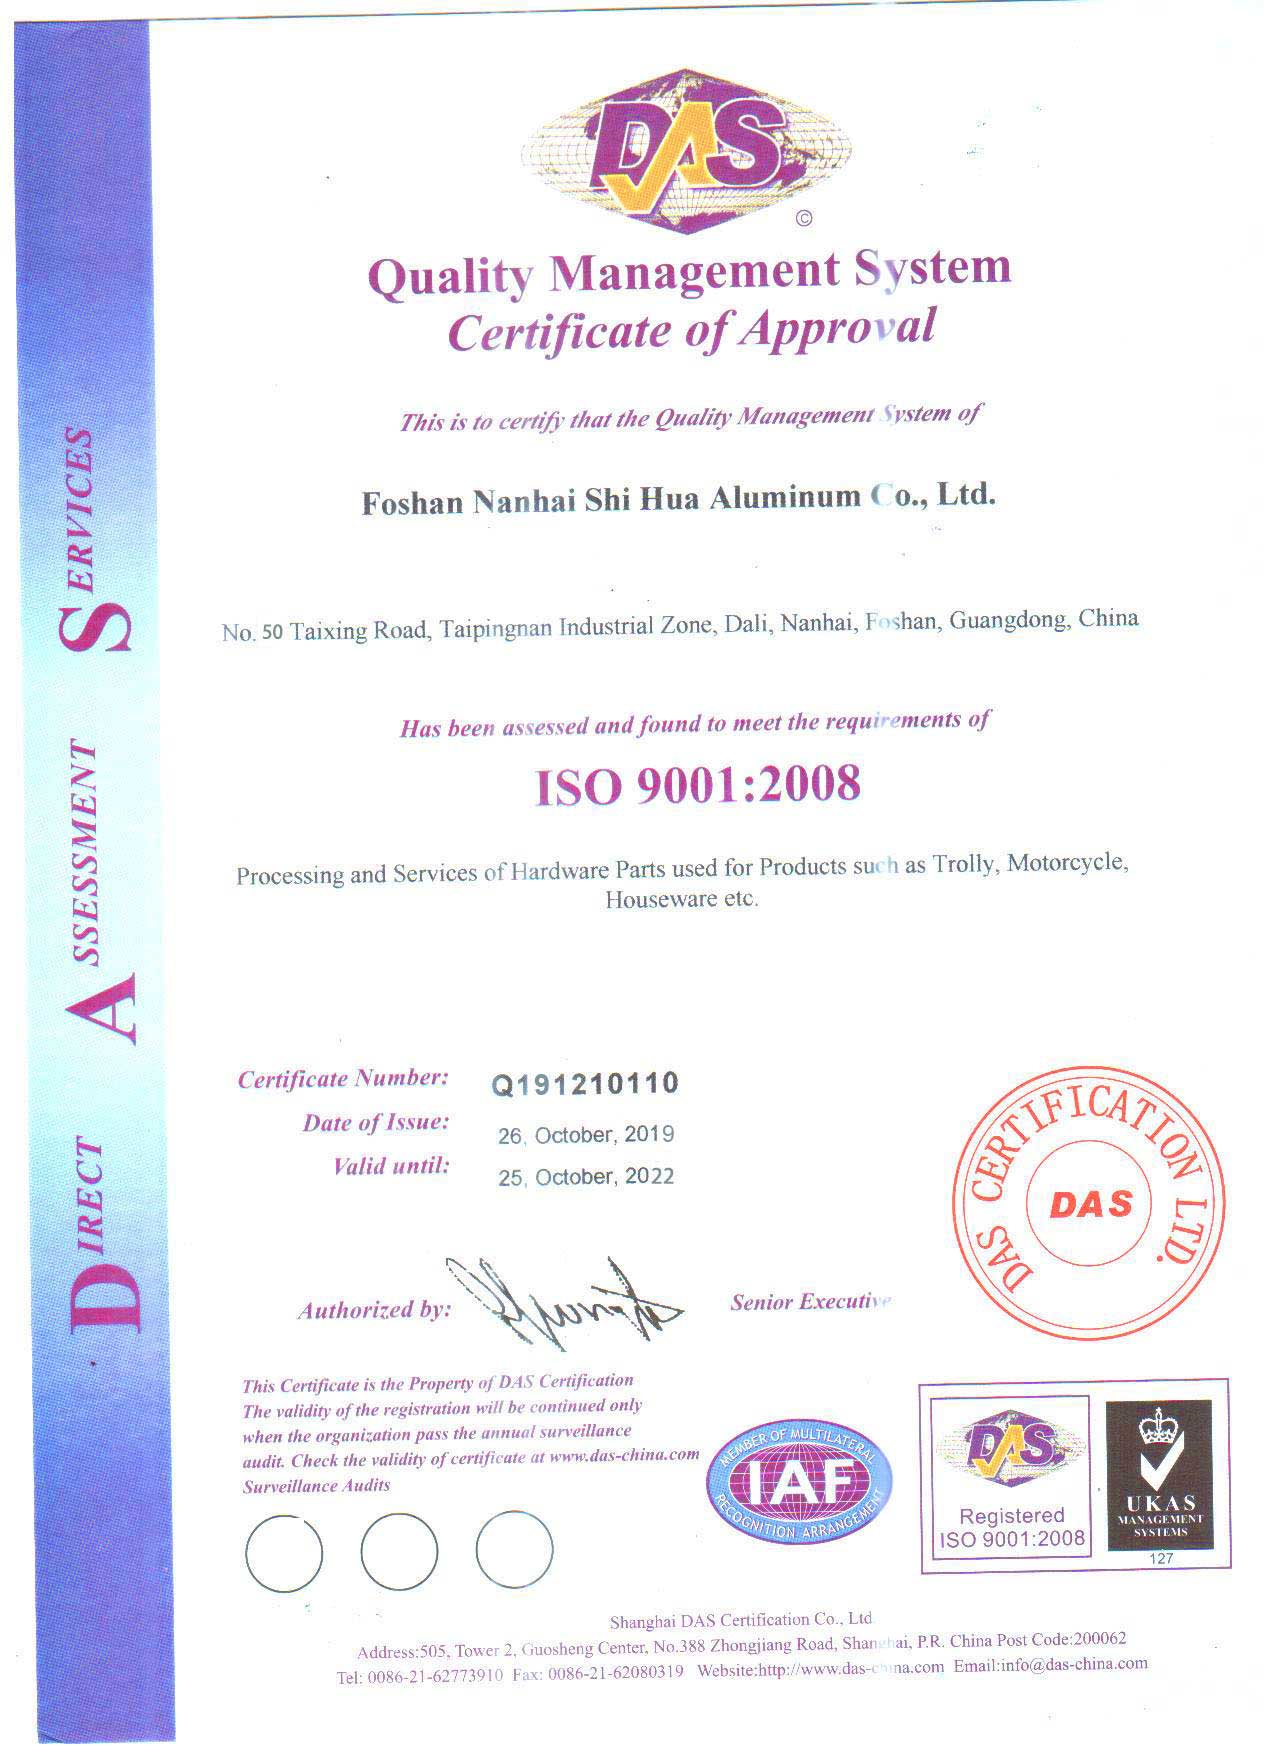 CERTIFICAT ISO9001: 2008